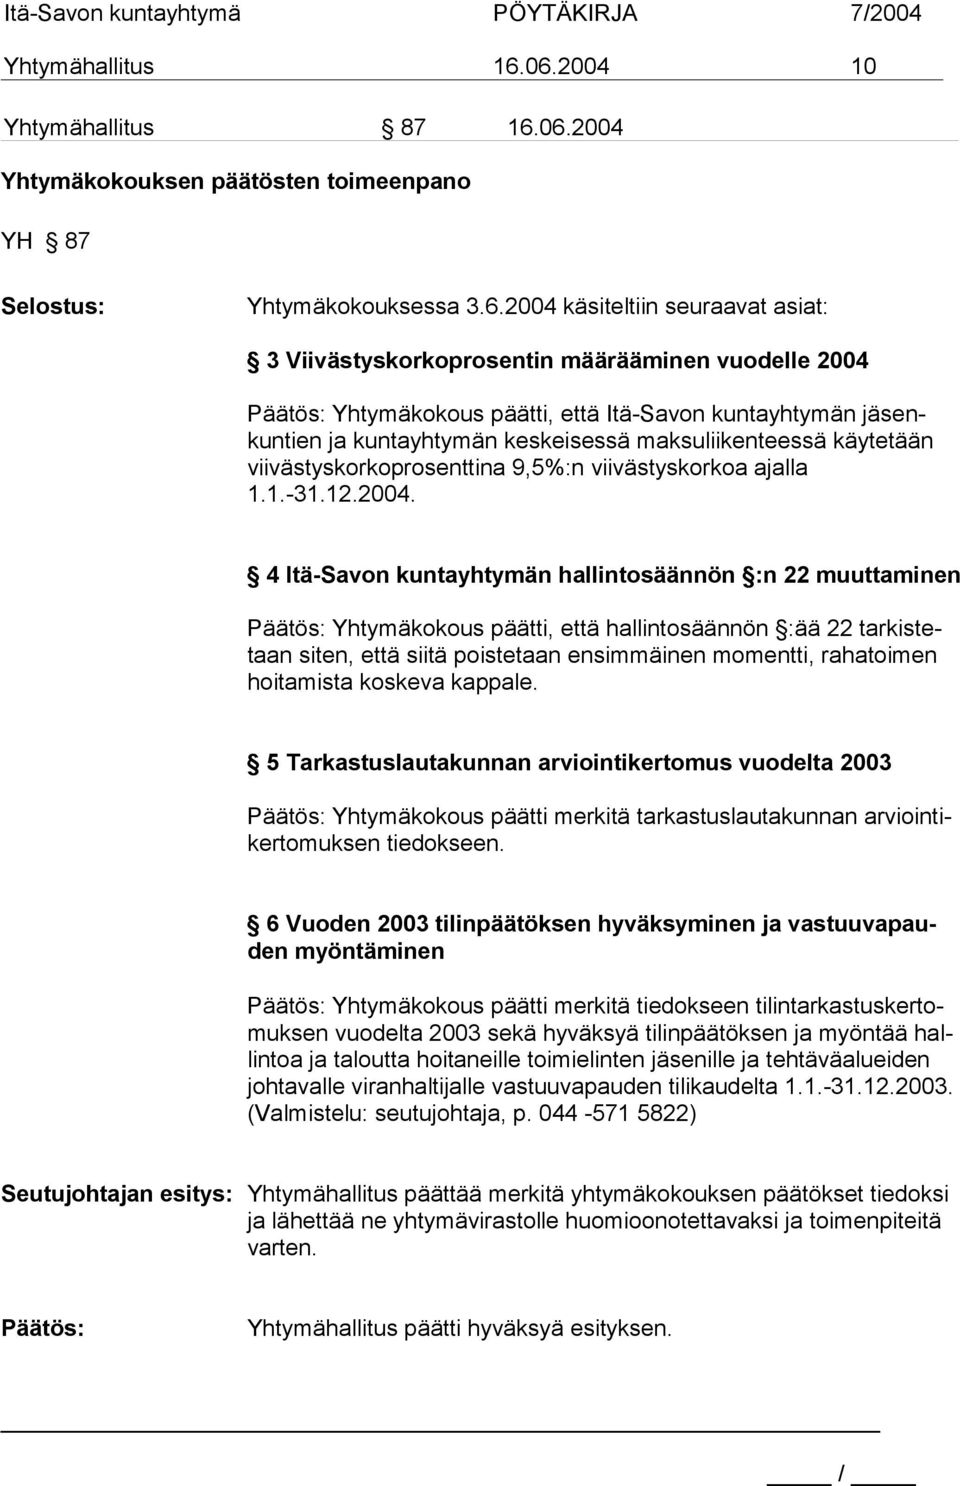 2004 Päätös: Yhtymäkokous päätti, että Itä-Savon kuntayhtymän jäsenkun tien ja kuntayh tymän keskeisessä maksuliikenteessä käytetään vii västys korkopro senttina 9,5%:n viivästyskorkoa ajalla 1.1.-31.